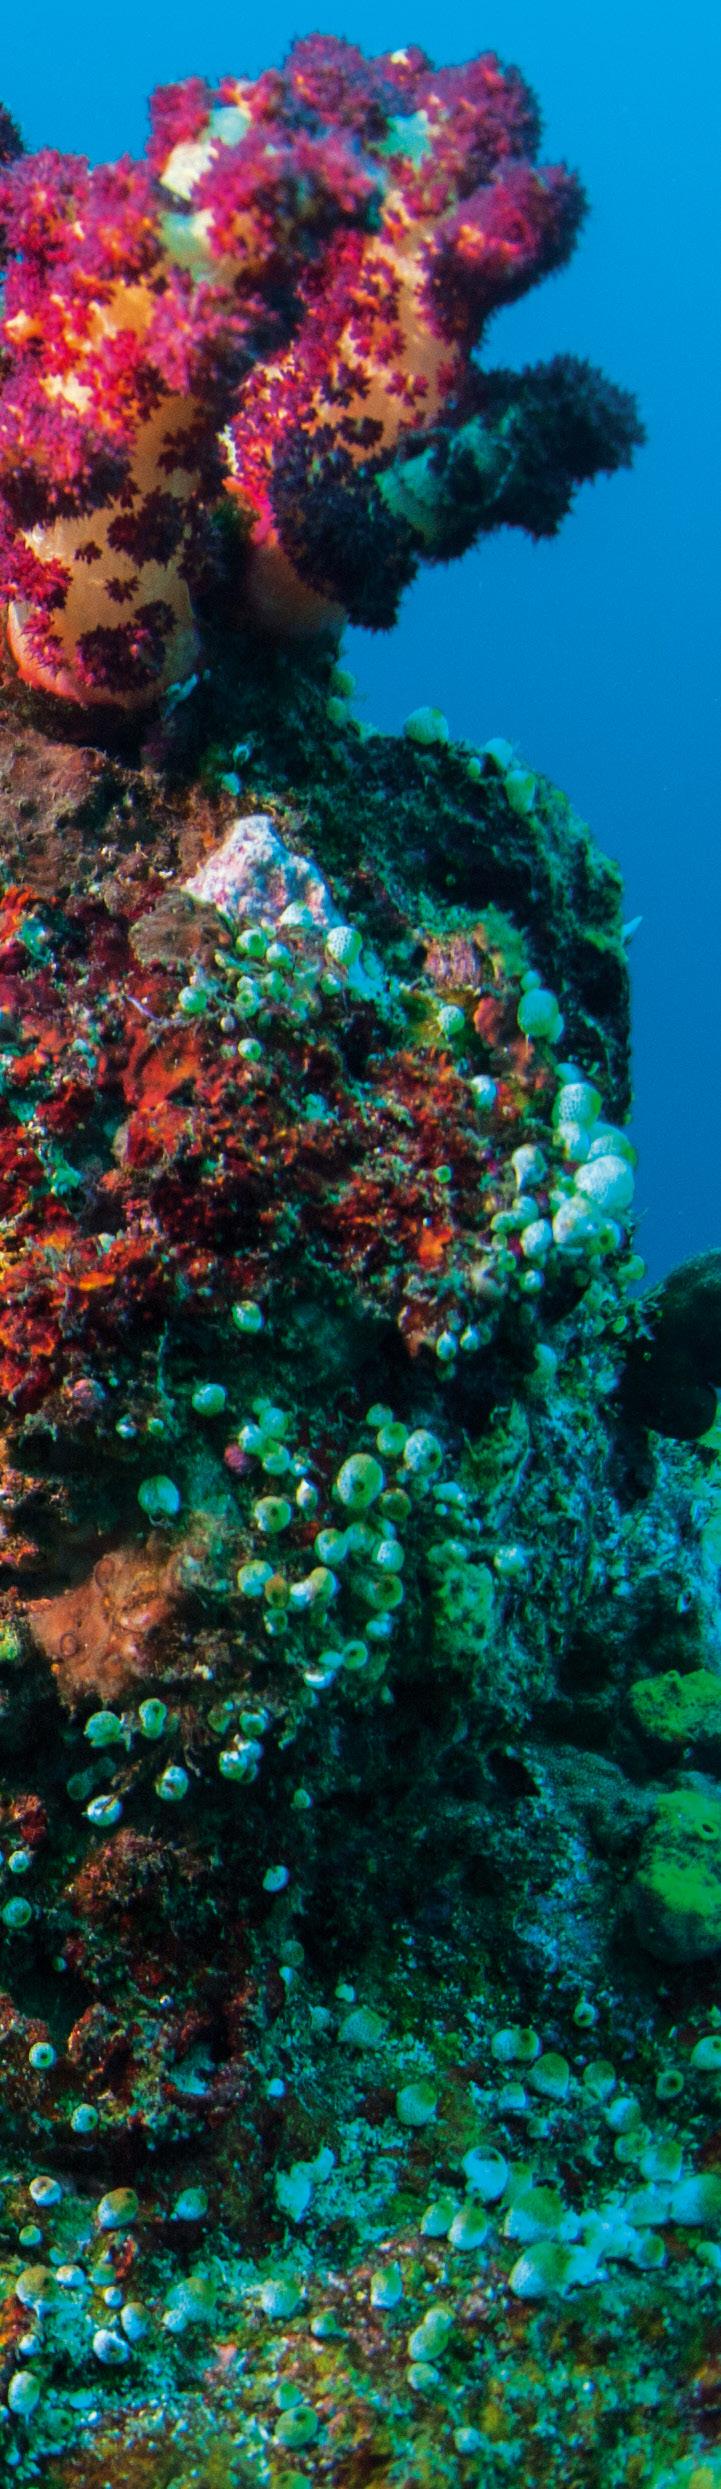 POKARMY DLA KORALOWCÓW Większość korali spotykanych w akwariach to gatunki żyjące w symbiozie z algami (zooksantelle). Proces fotosyntezy, który prowadzą zooksantelle, wymaga dostępu do światła.